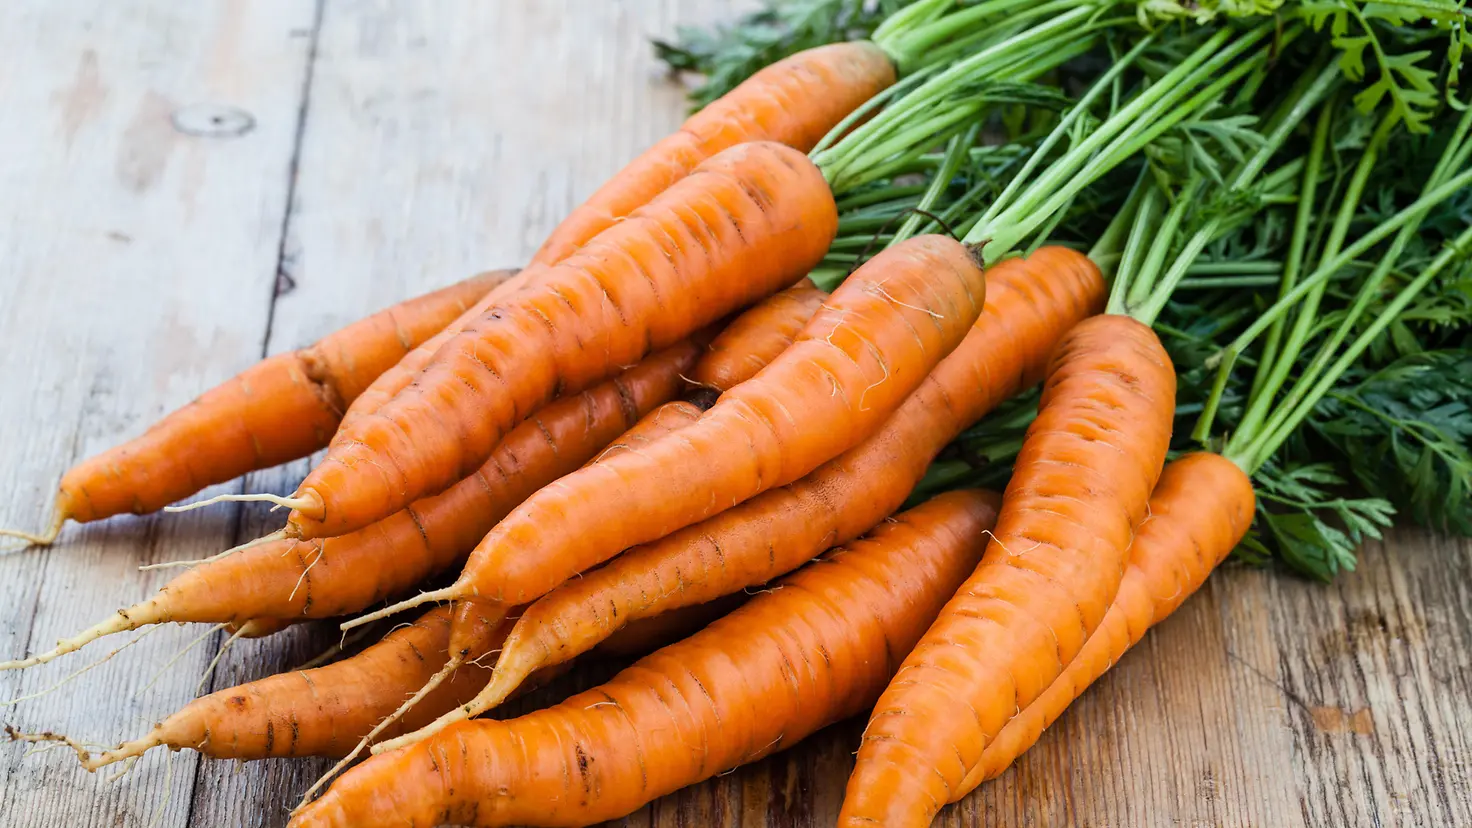 Das Bild zeigt einen Bund Karotten.